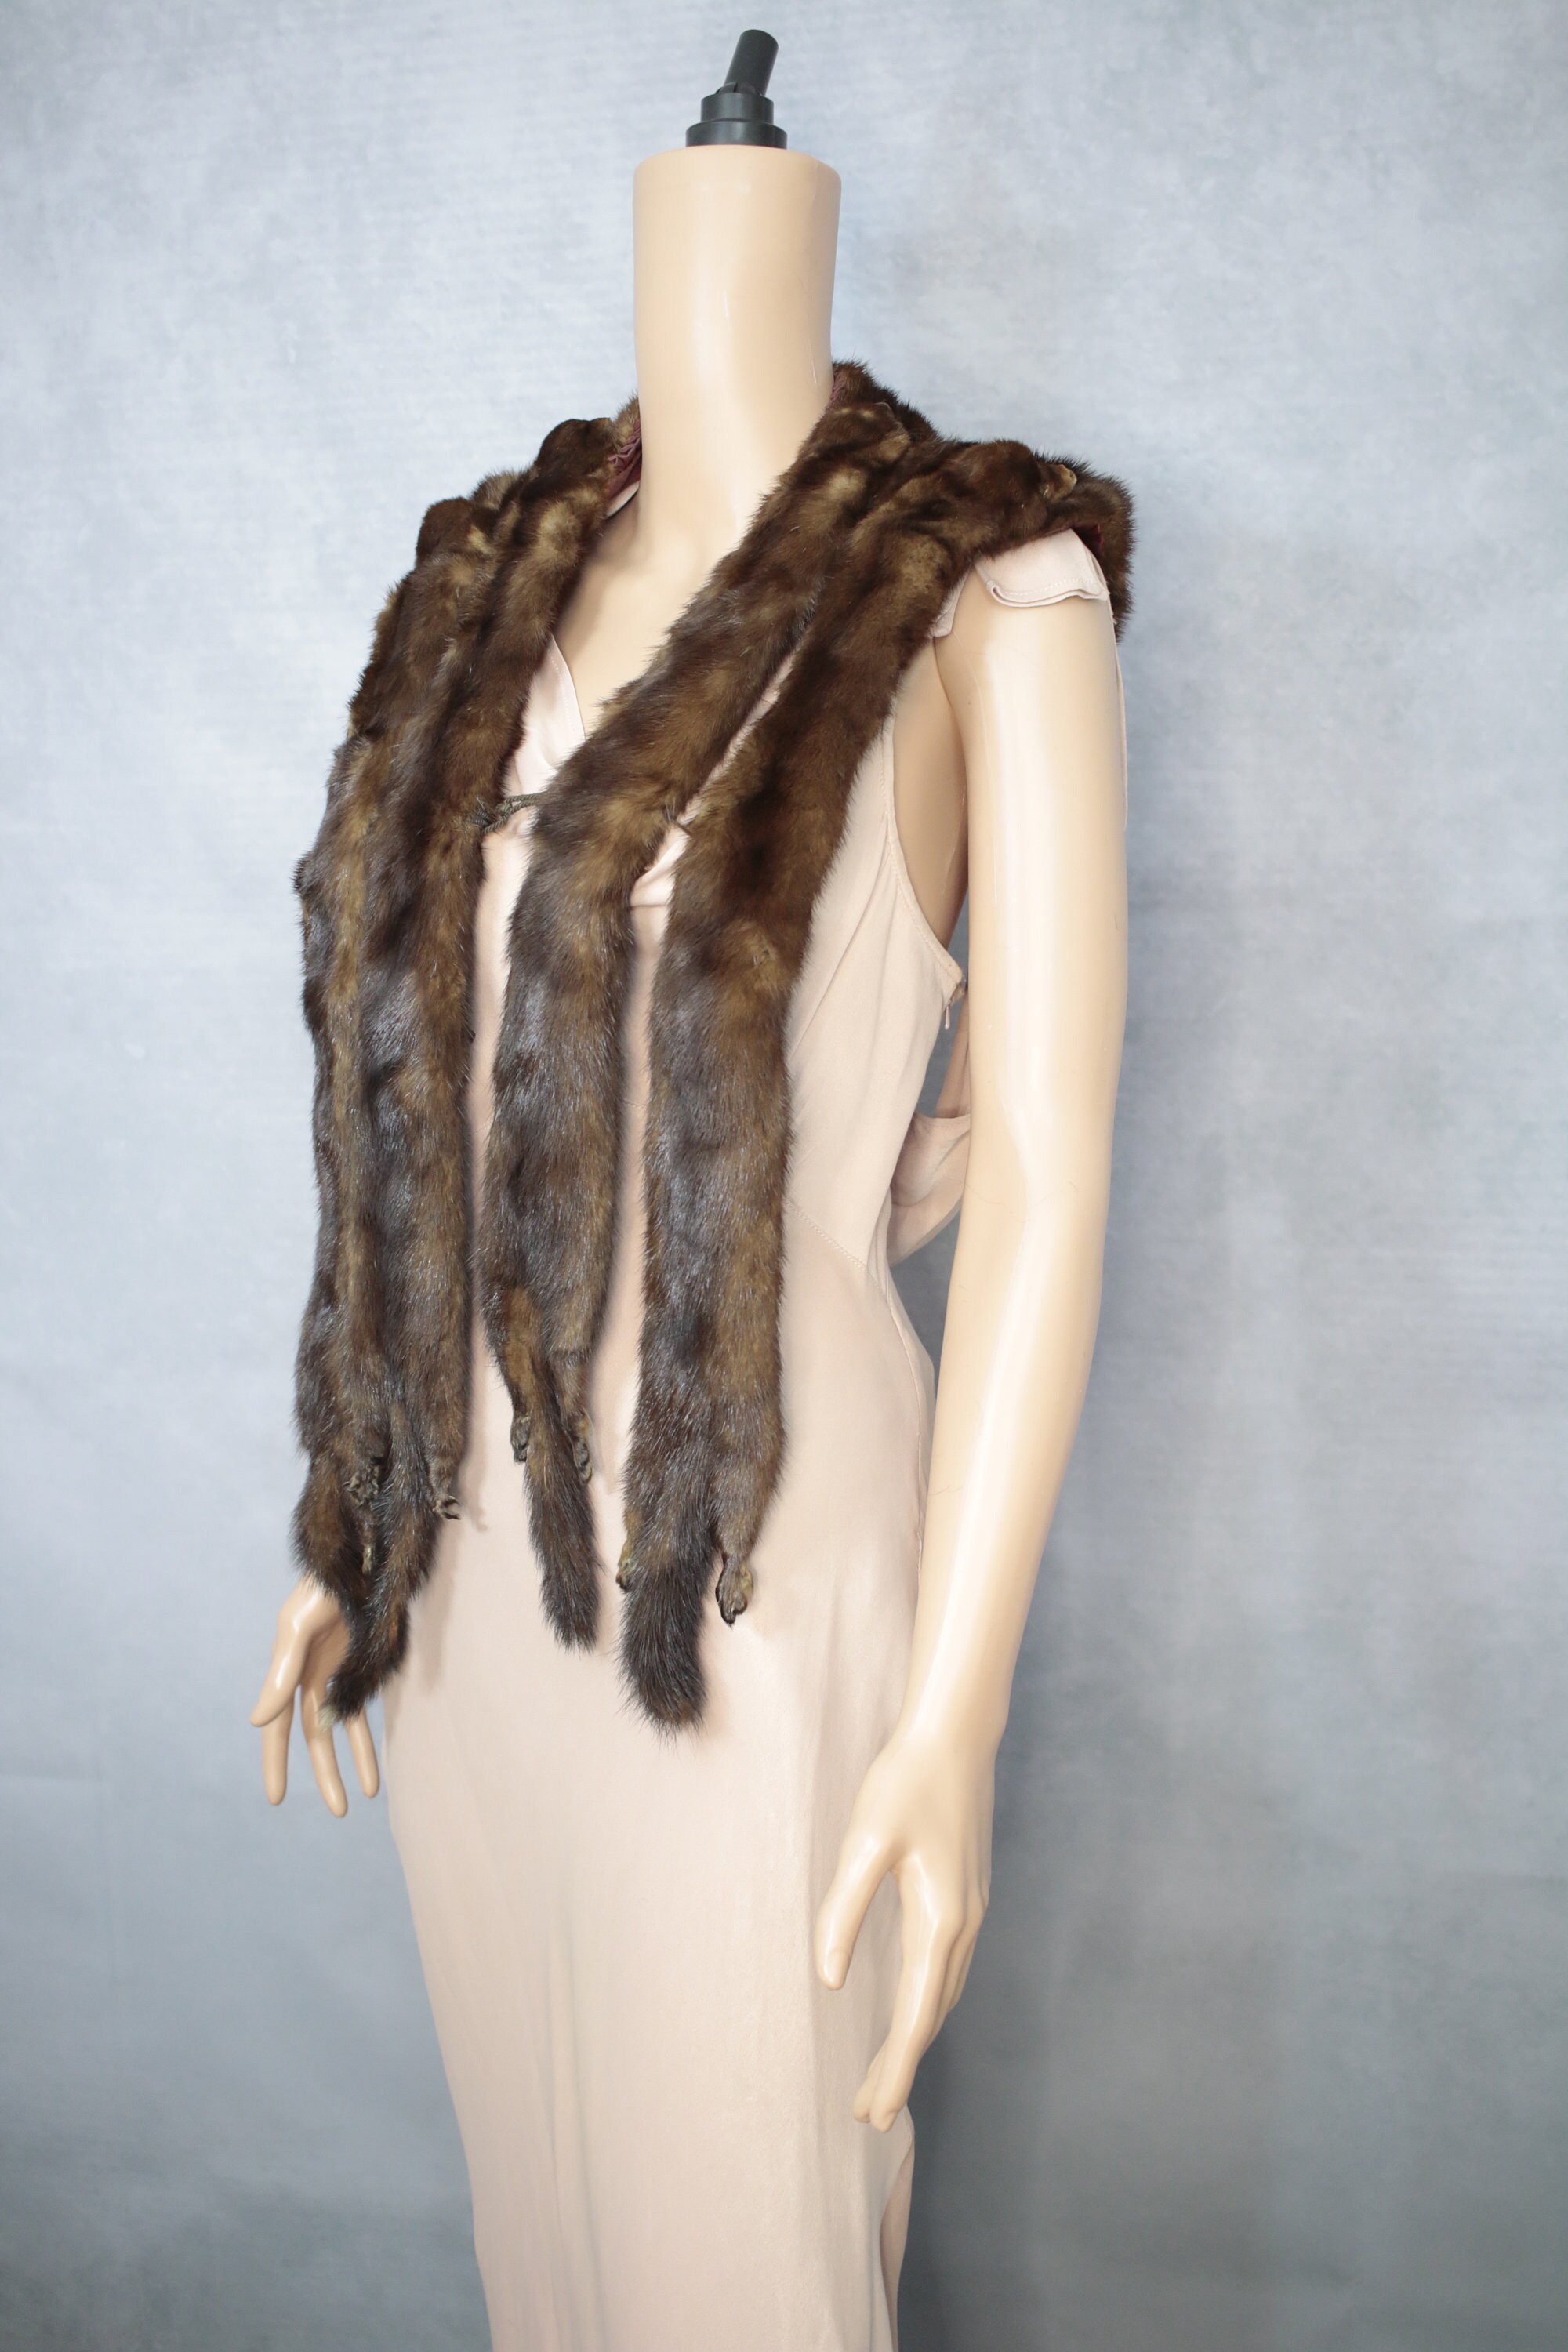 Vintage Antique 1930s / 1940s Genuine Mink Fur Stole Pelt Wrap Scarf Brown